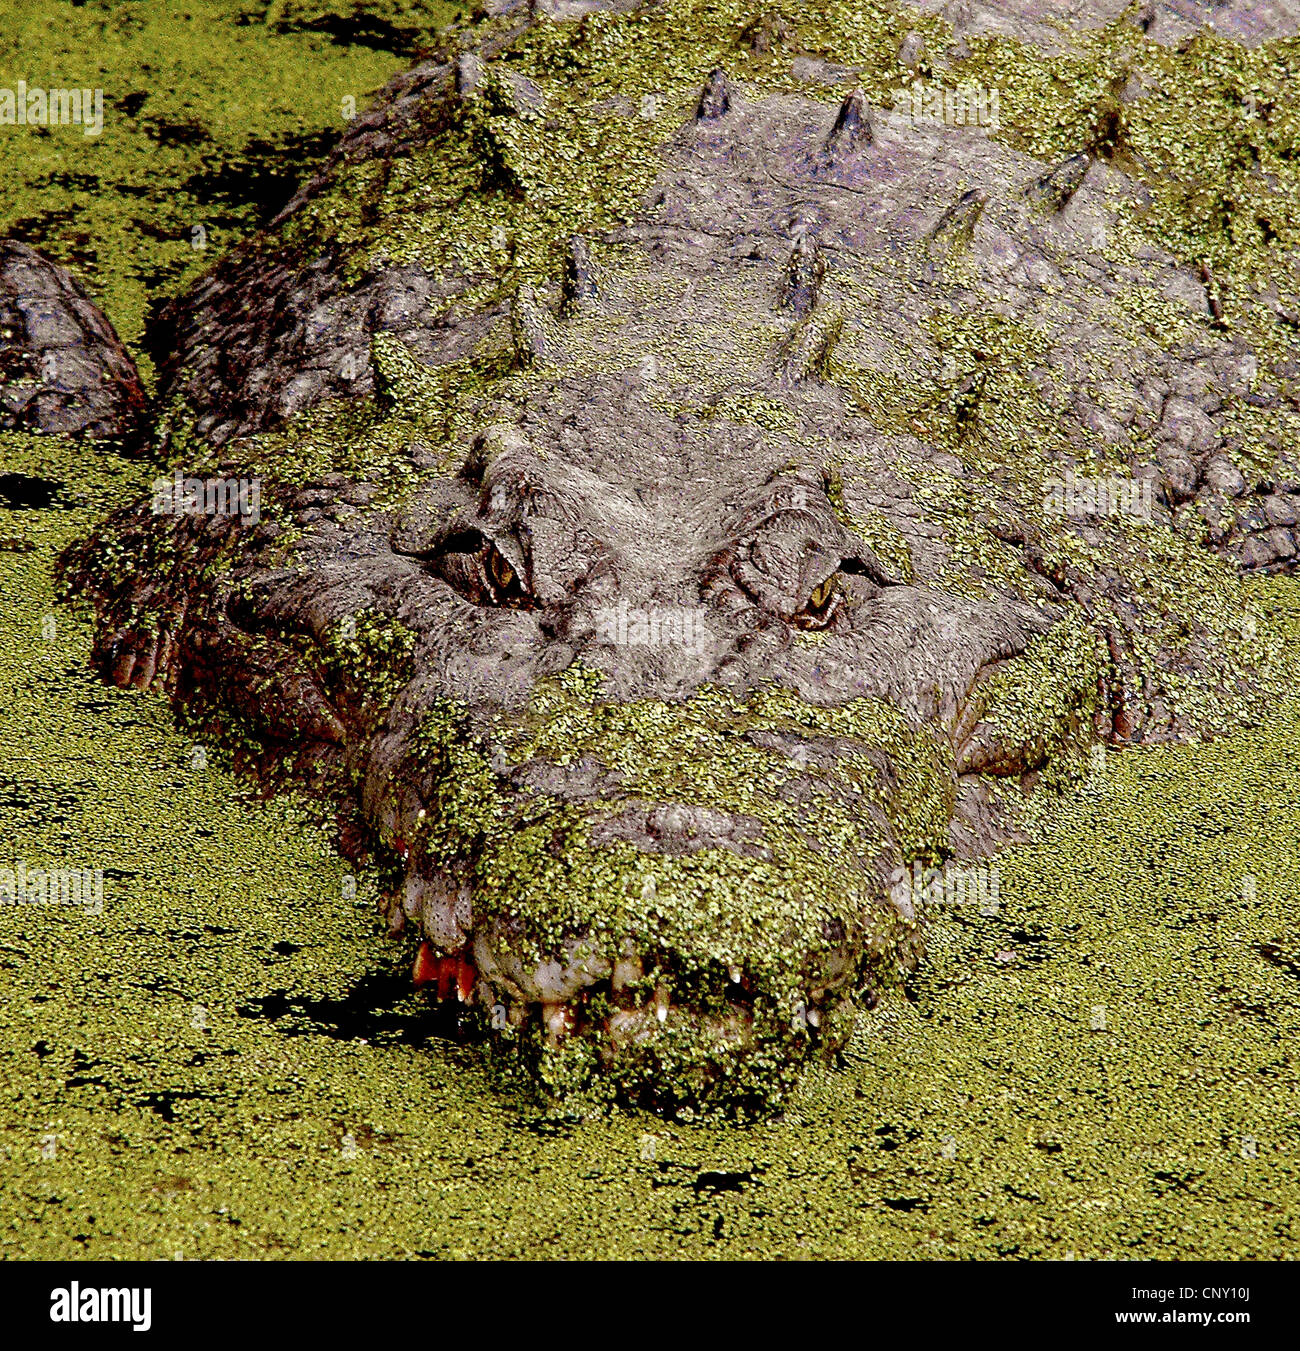 Coccodrillo di acqua salata, estuari Crocodile (Crocodylus porosus), perfettamente mimetizzati tra lenticchie d'acqua in corrispondenza della superficie dell'acqua, Australia, Queensland Foto Stock